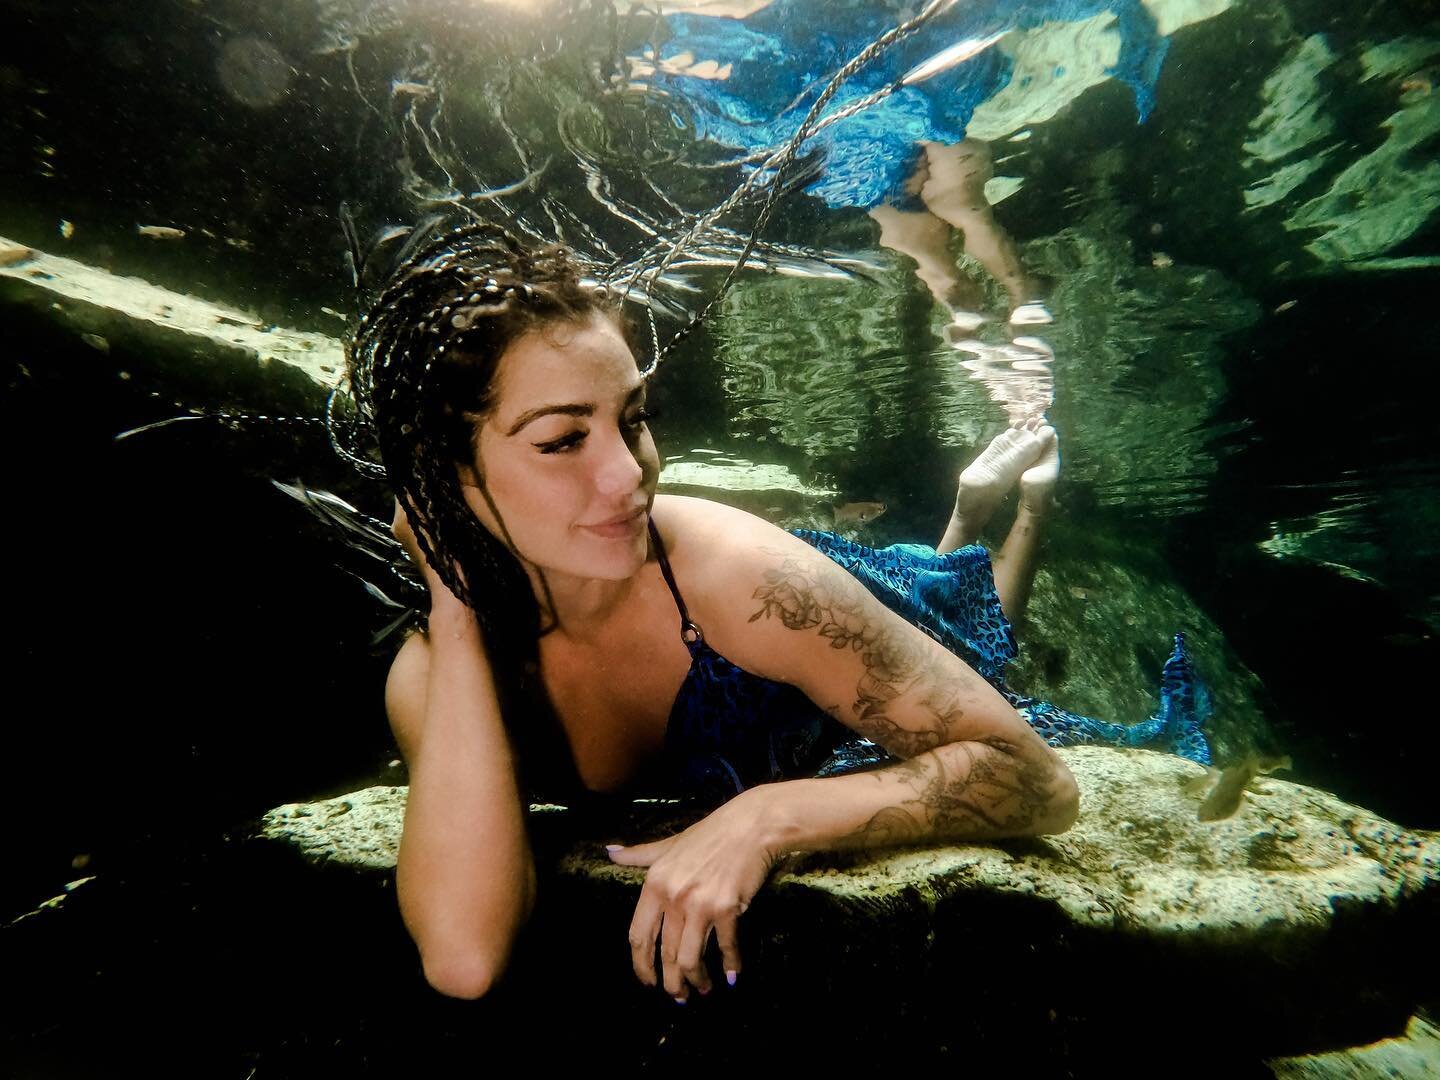 Cenote Photography 
#cenote #mexico #tulum #photographer #tulumphotographer #cancunphotographer #tulumweddingphotographer #travelphotography #uwmodel #underwaterphotography #underwatermodel #rivieramaya #goodvibesonly